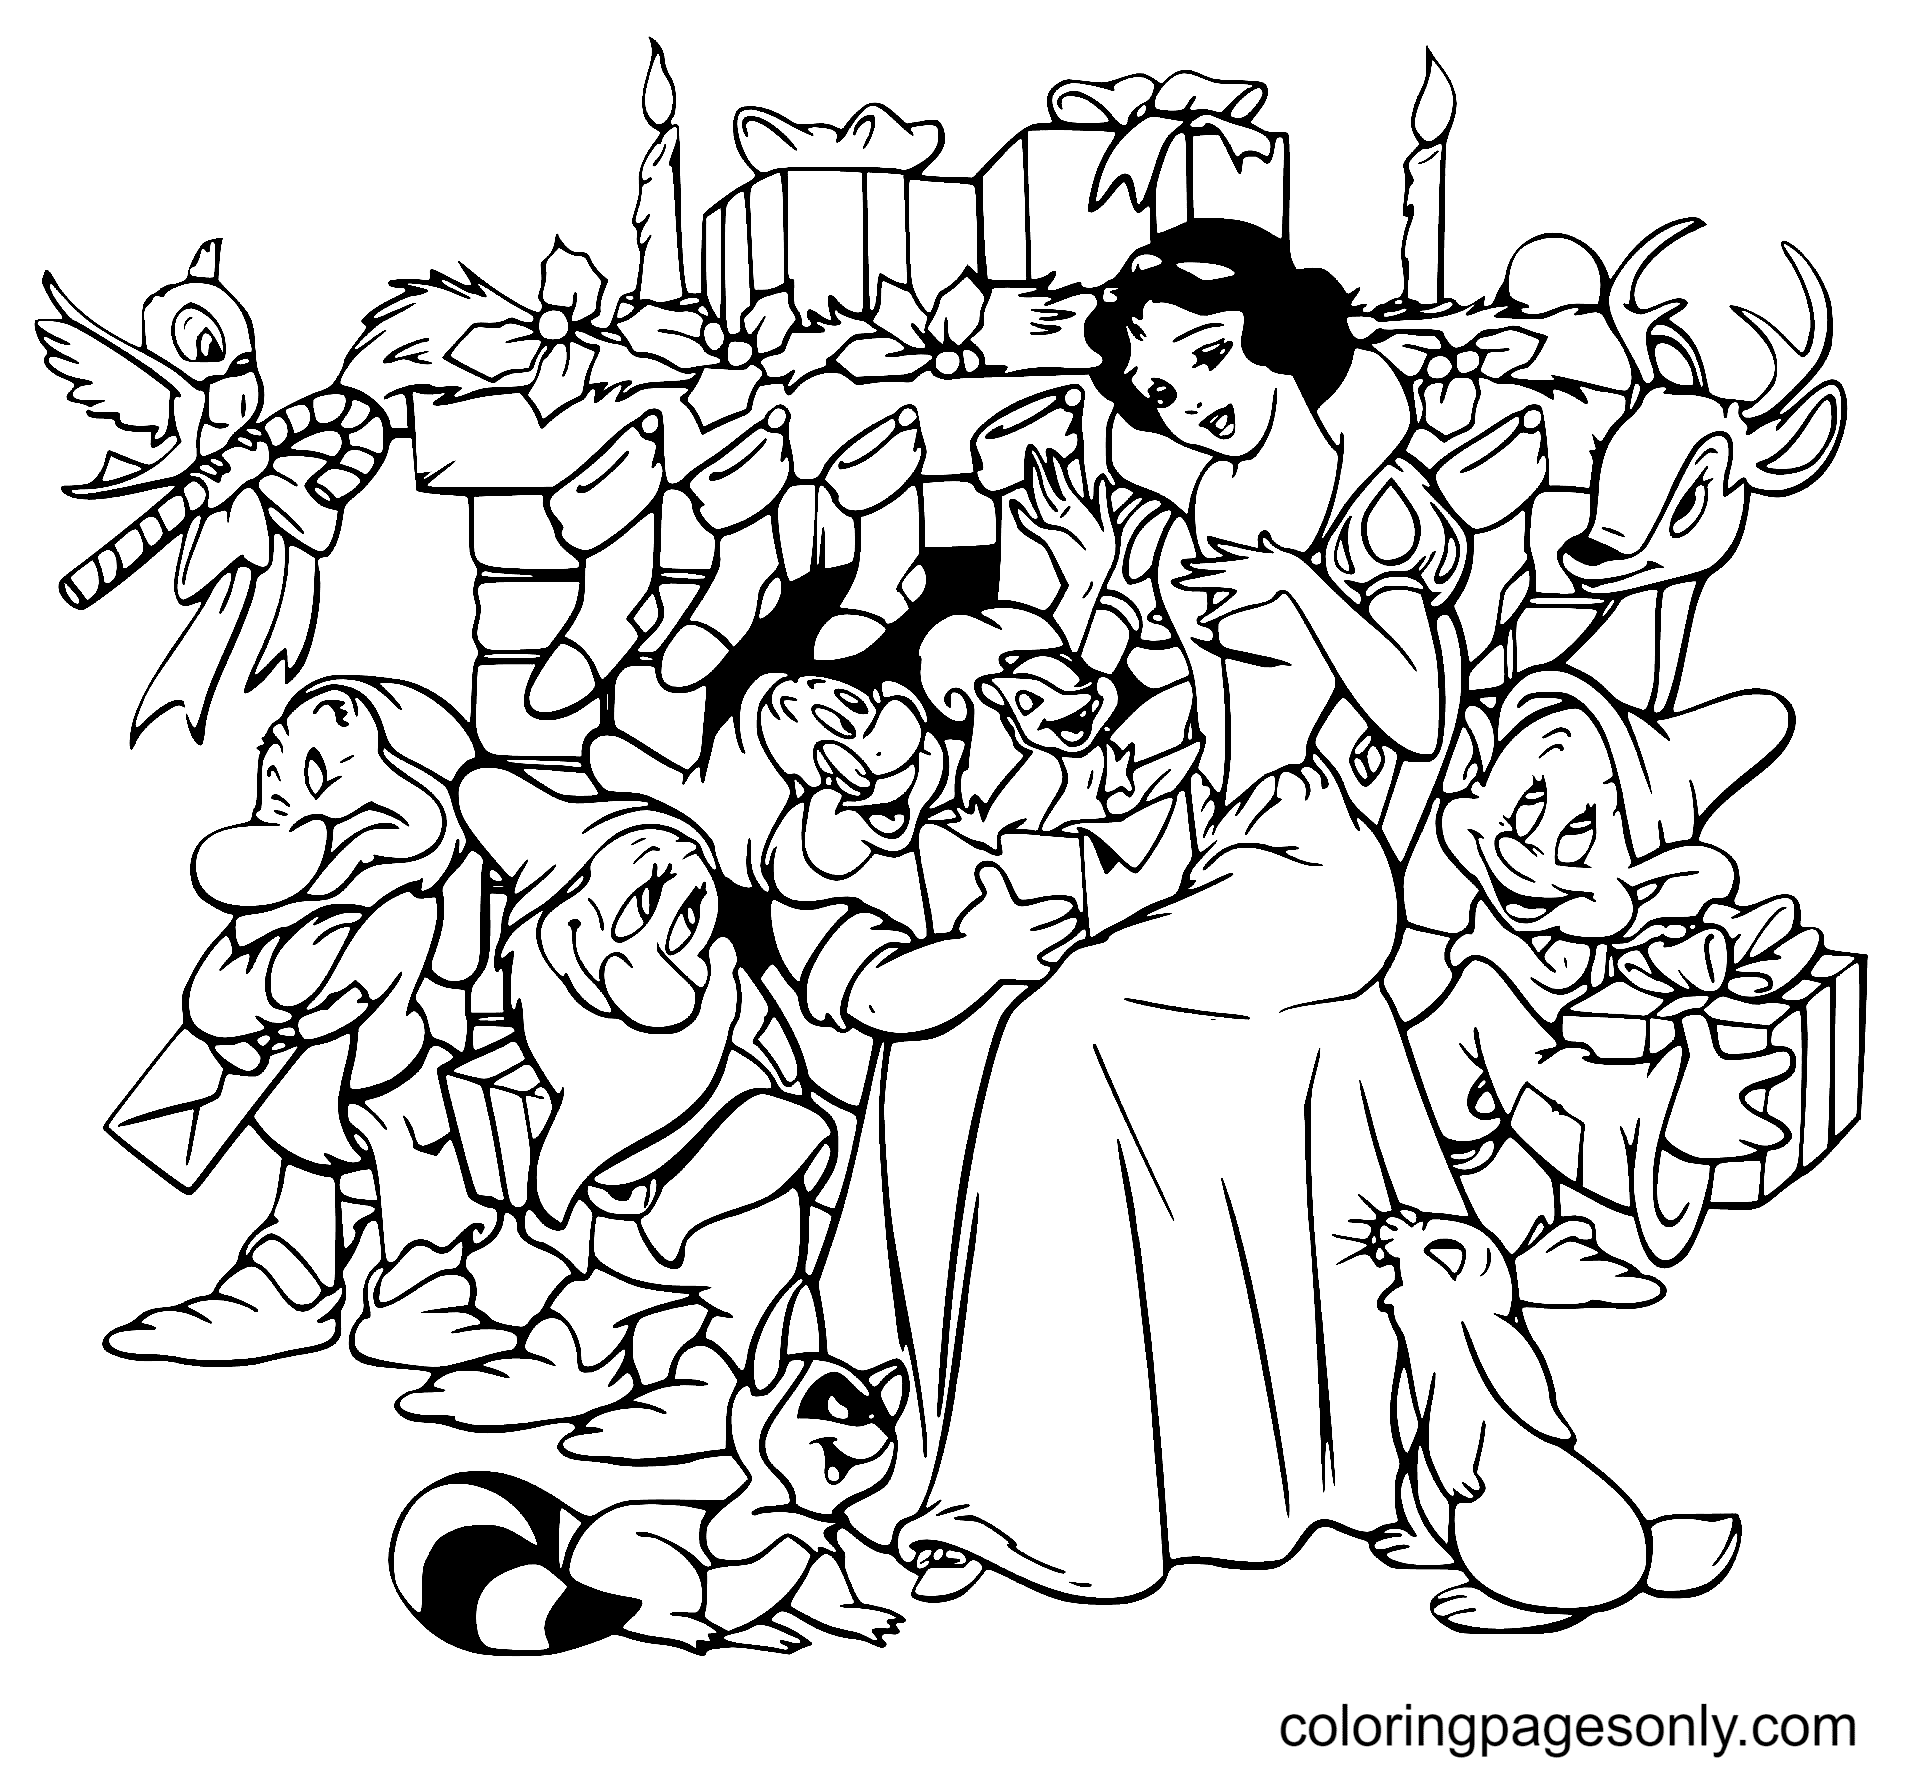 Intercambio de regalos navideños de Blancanieves enanos de Disney Christmas